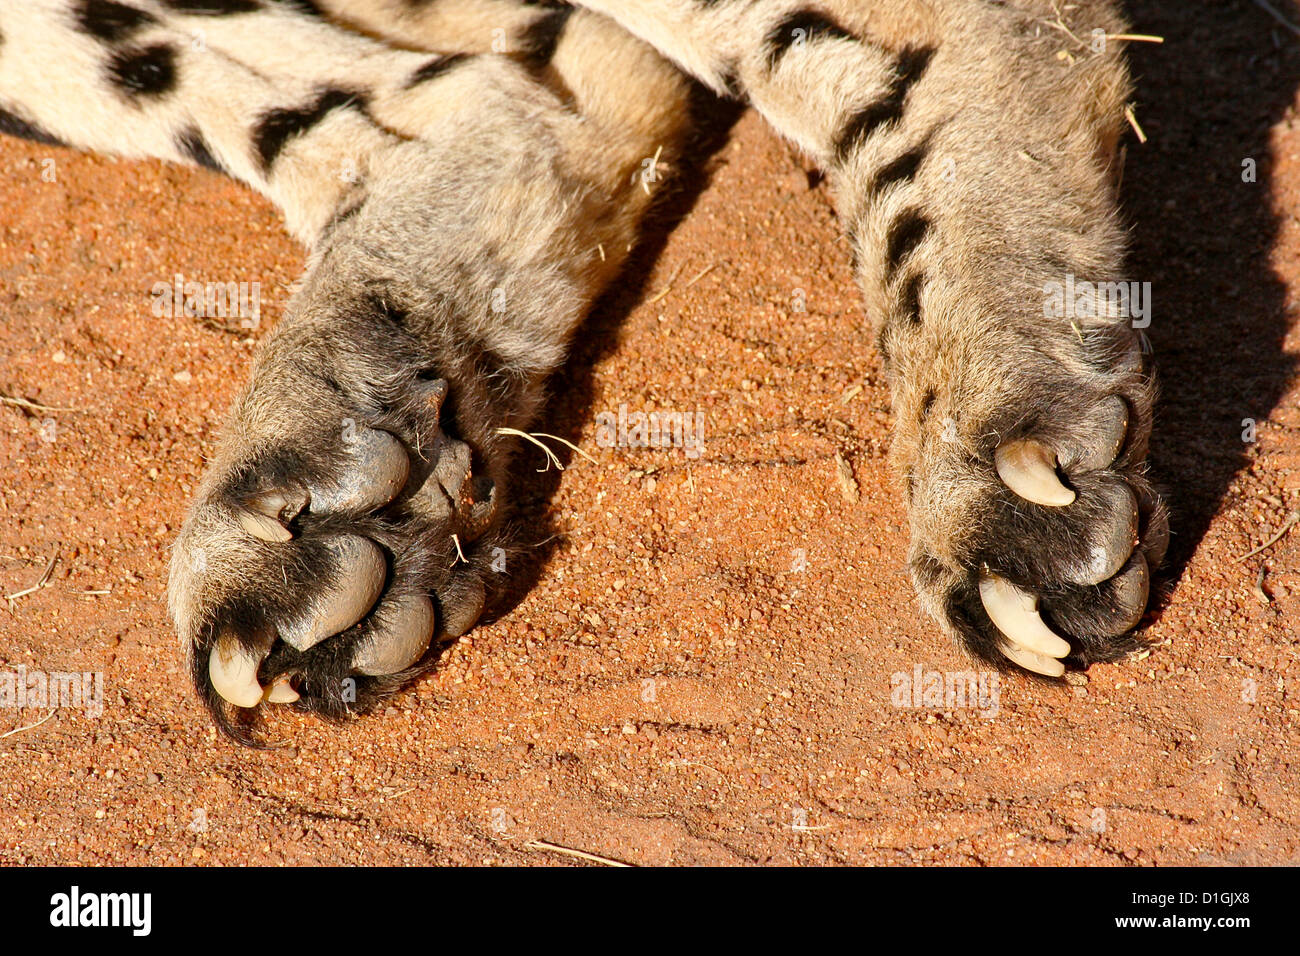 cheetah claws